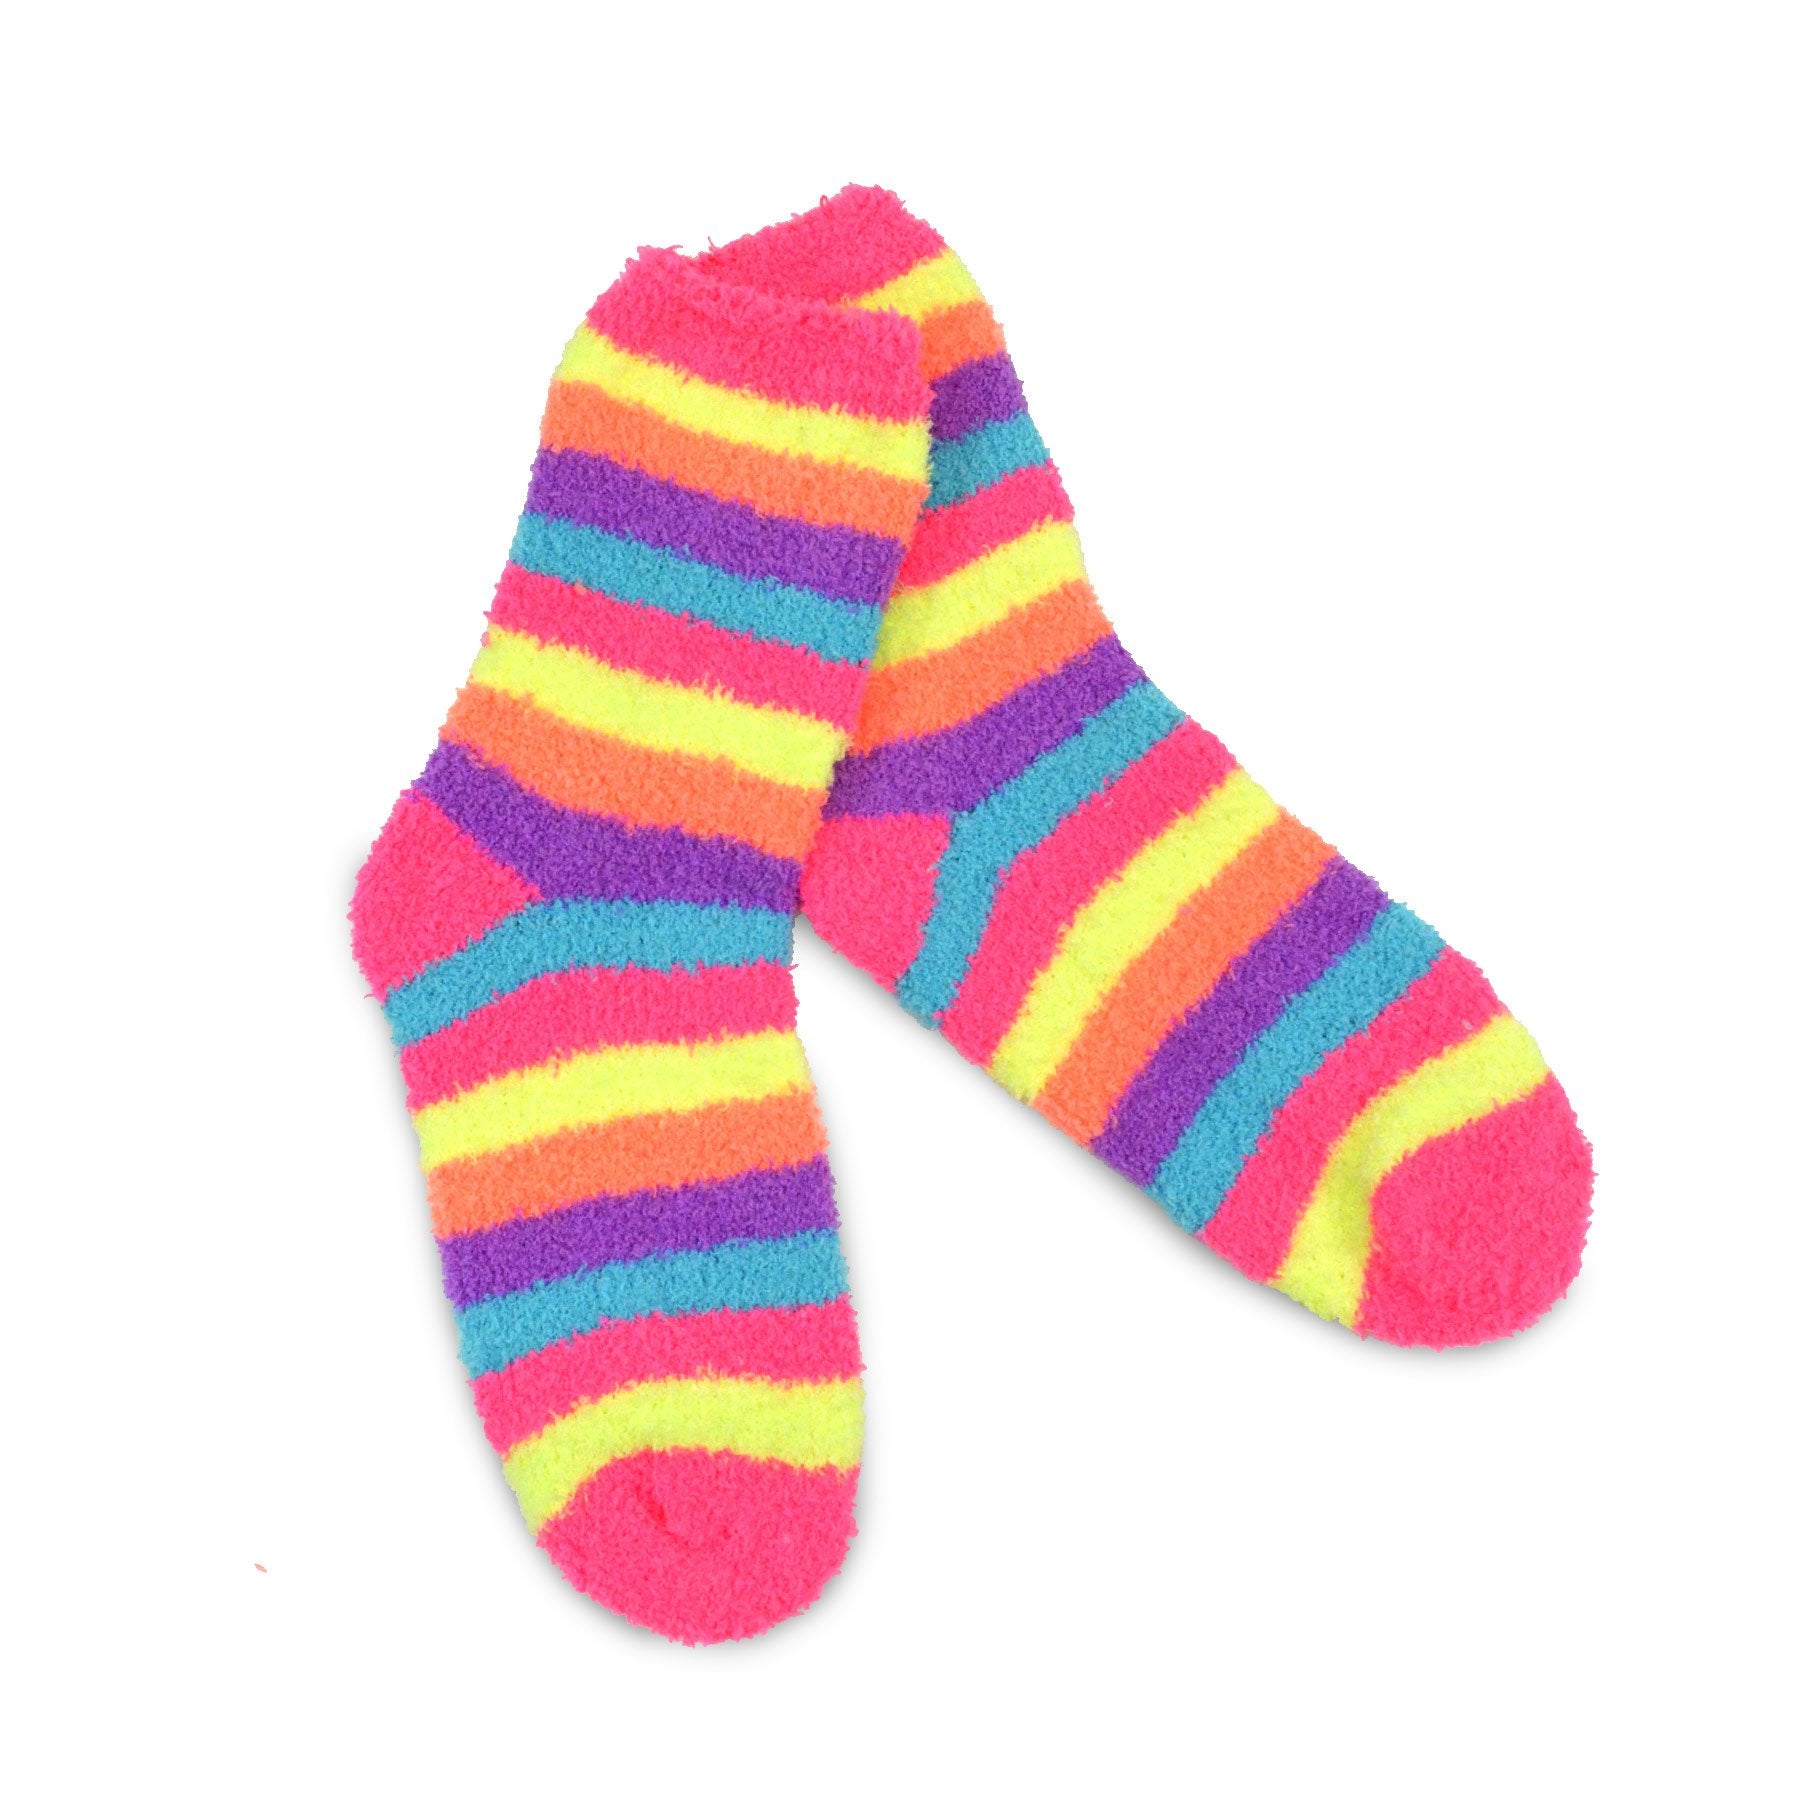 TeeHee Socks Women's Fuzzy Polyester Crew Neon Stripes 2-Pack (18001)